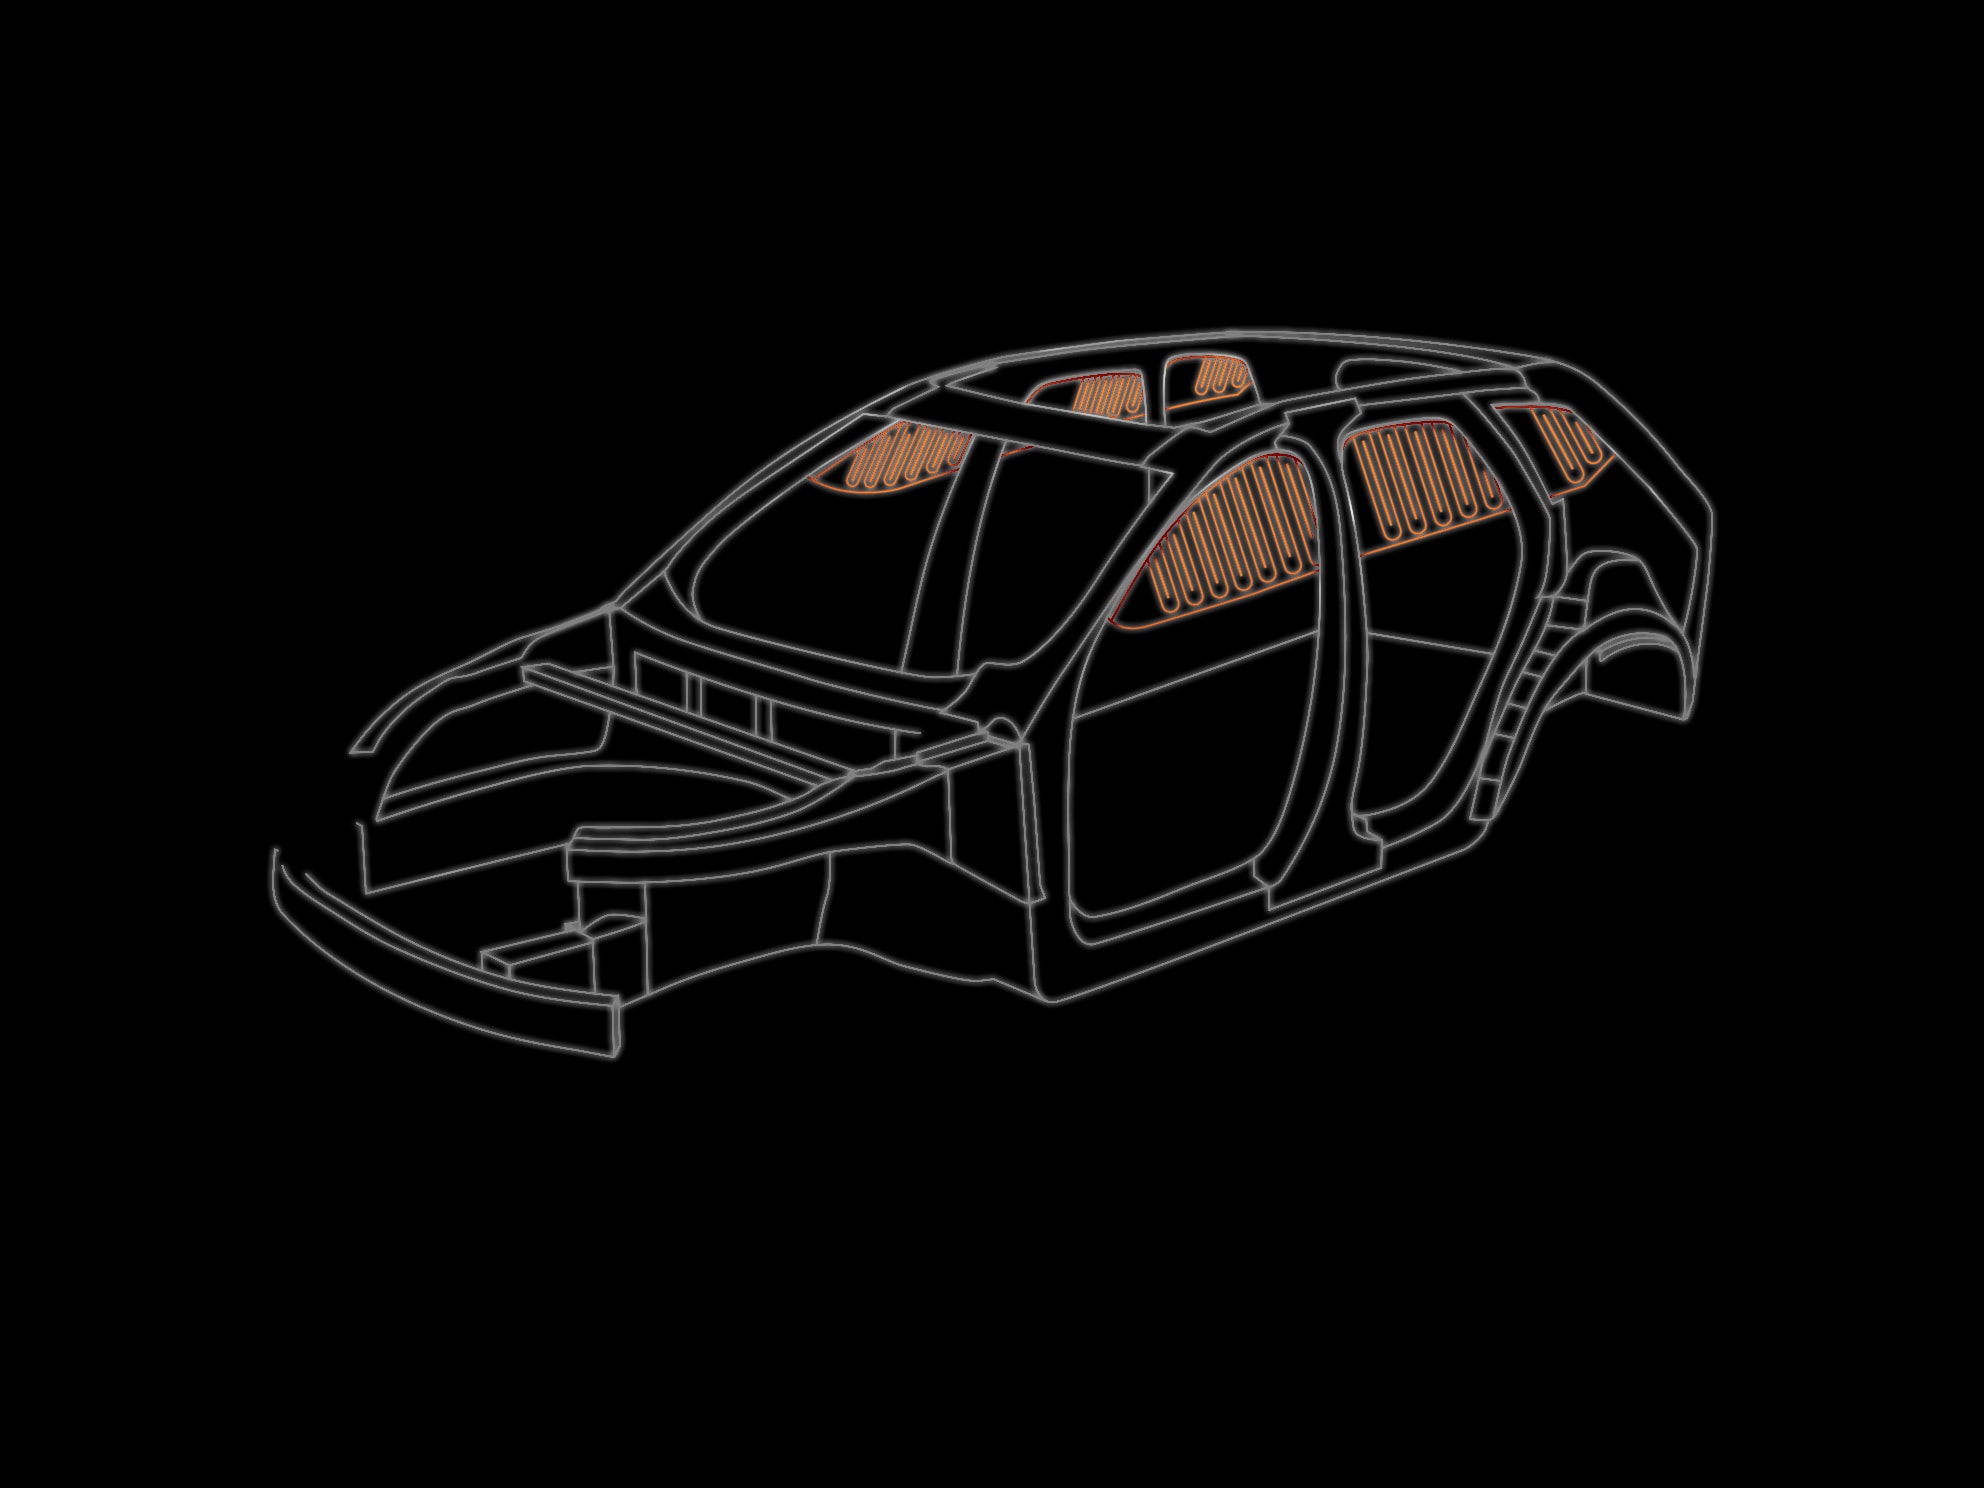 Un esquema digital del chasis de un vehículo